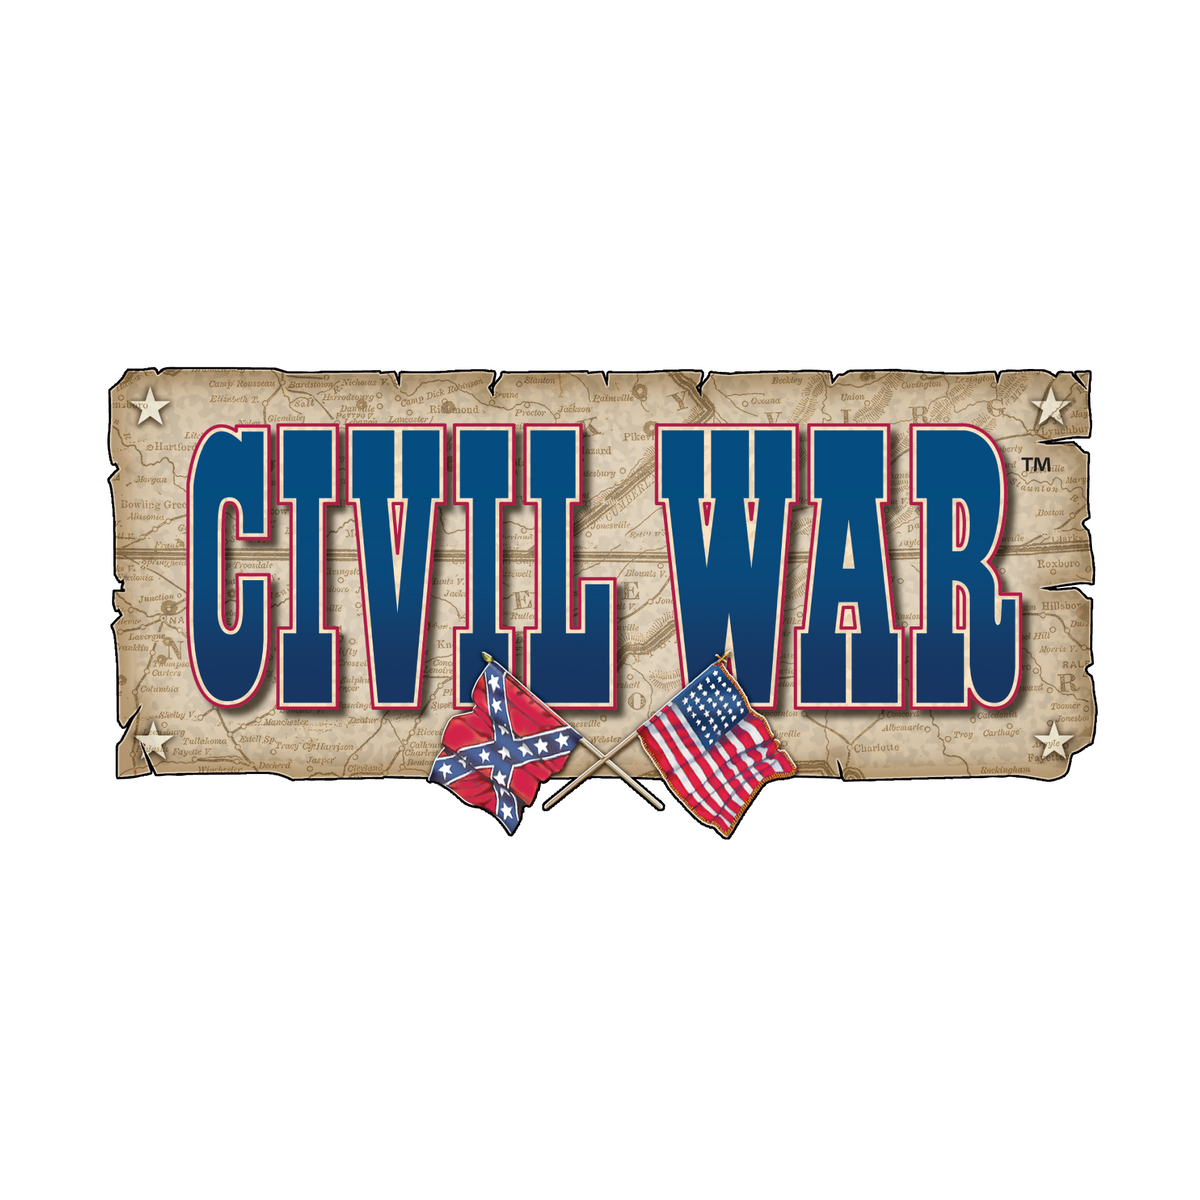 American Civil War Symbols